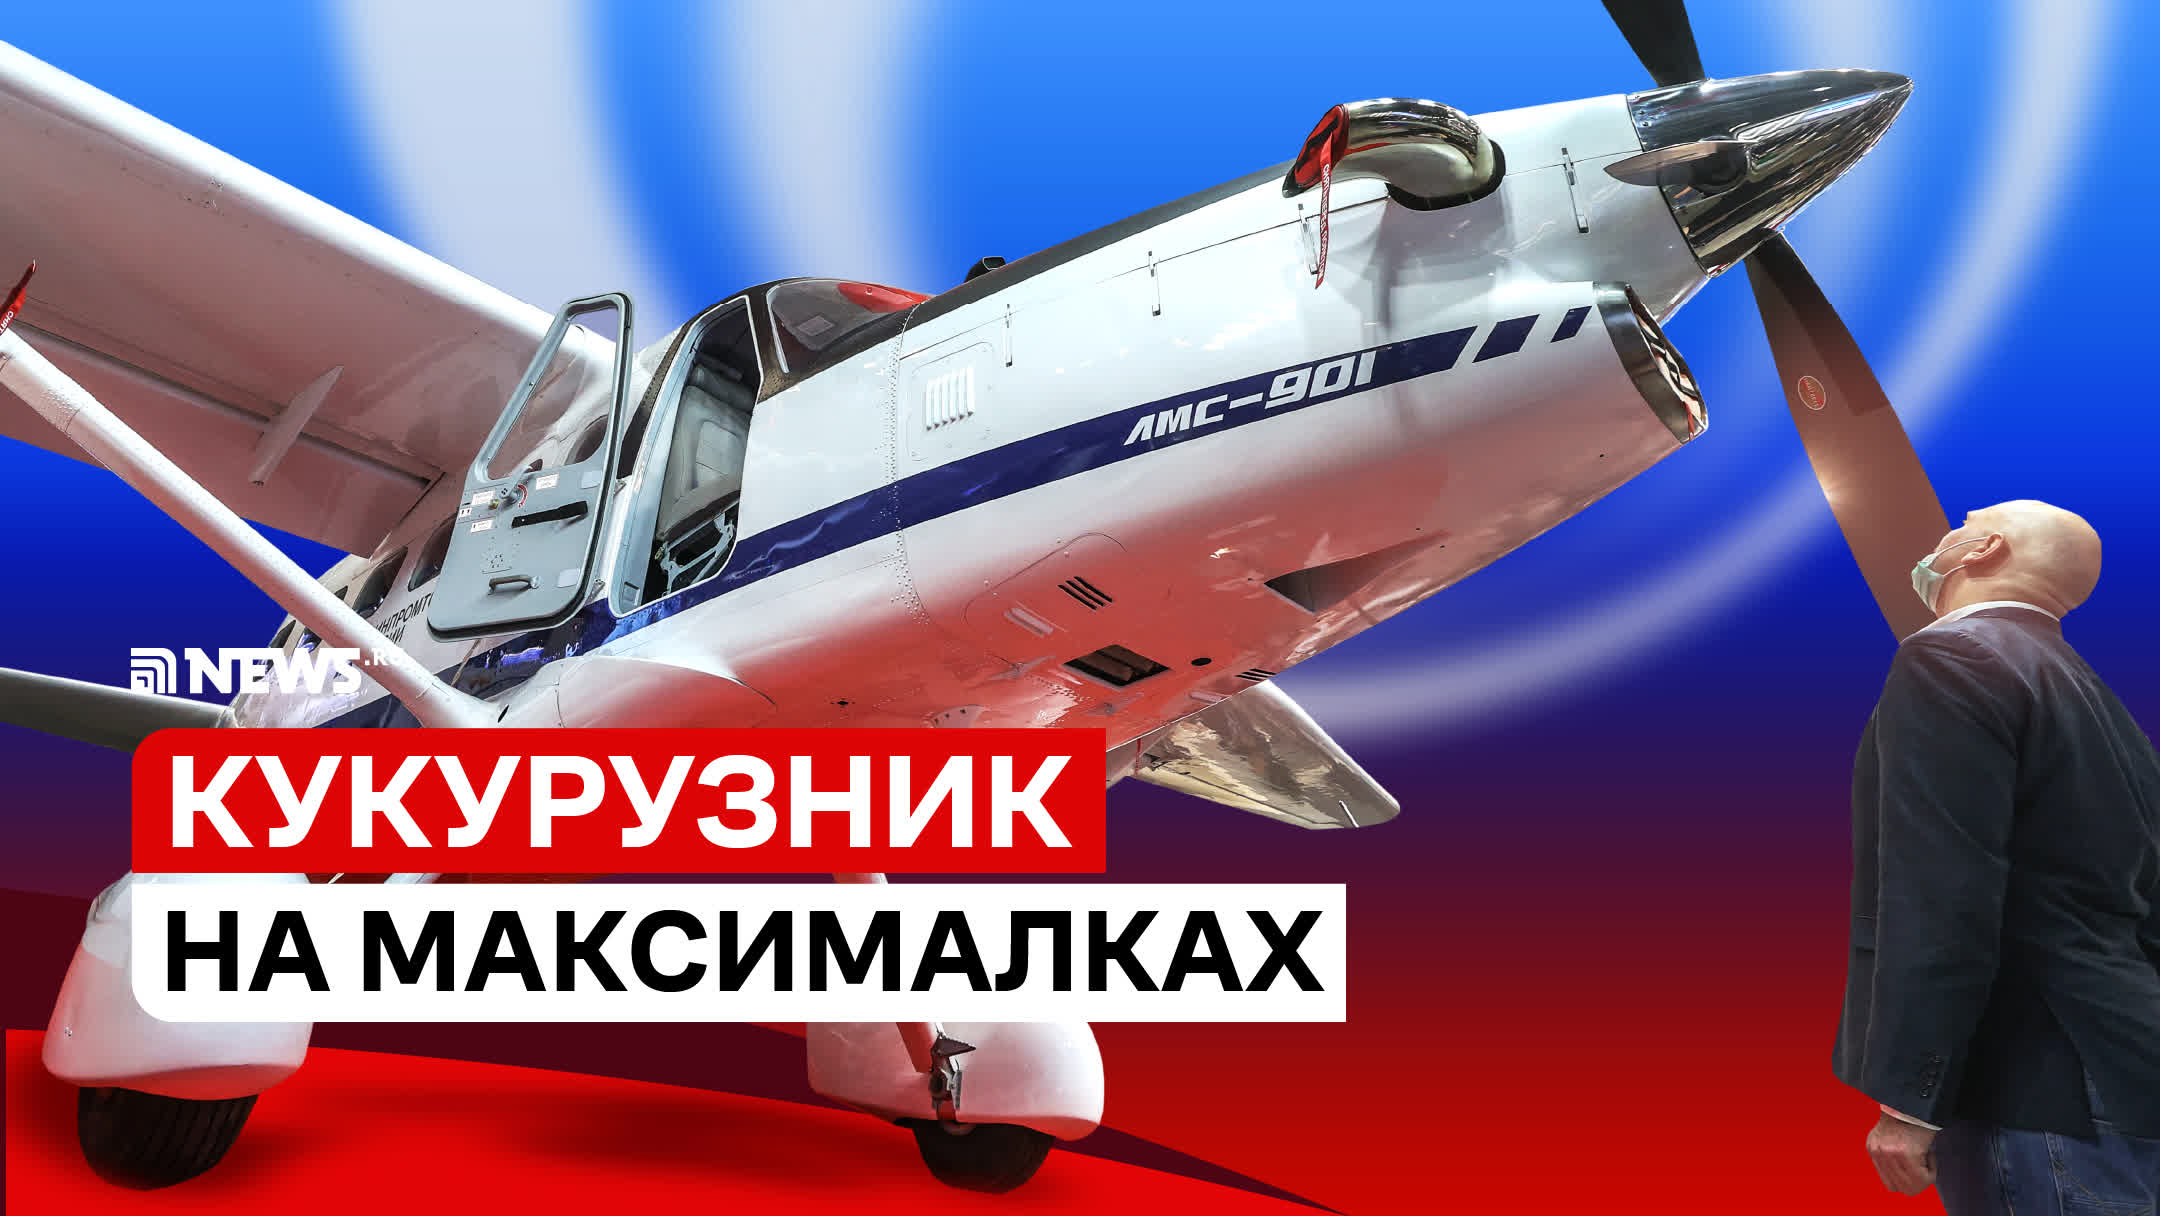 Самолет ЛМС-901 «Байкал» – САМЫЙ ПОЛНЫЙ ОБЗОР | Ан-2 подвинься!